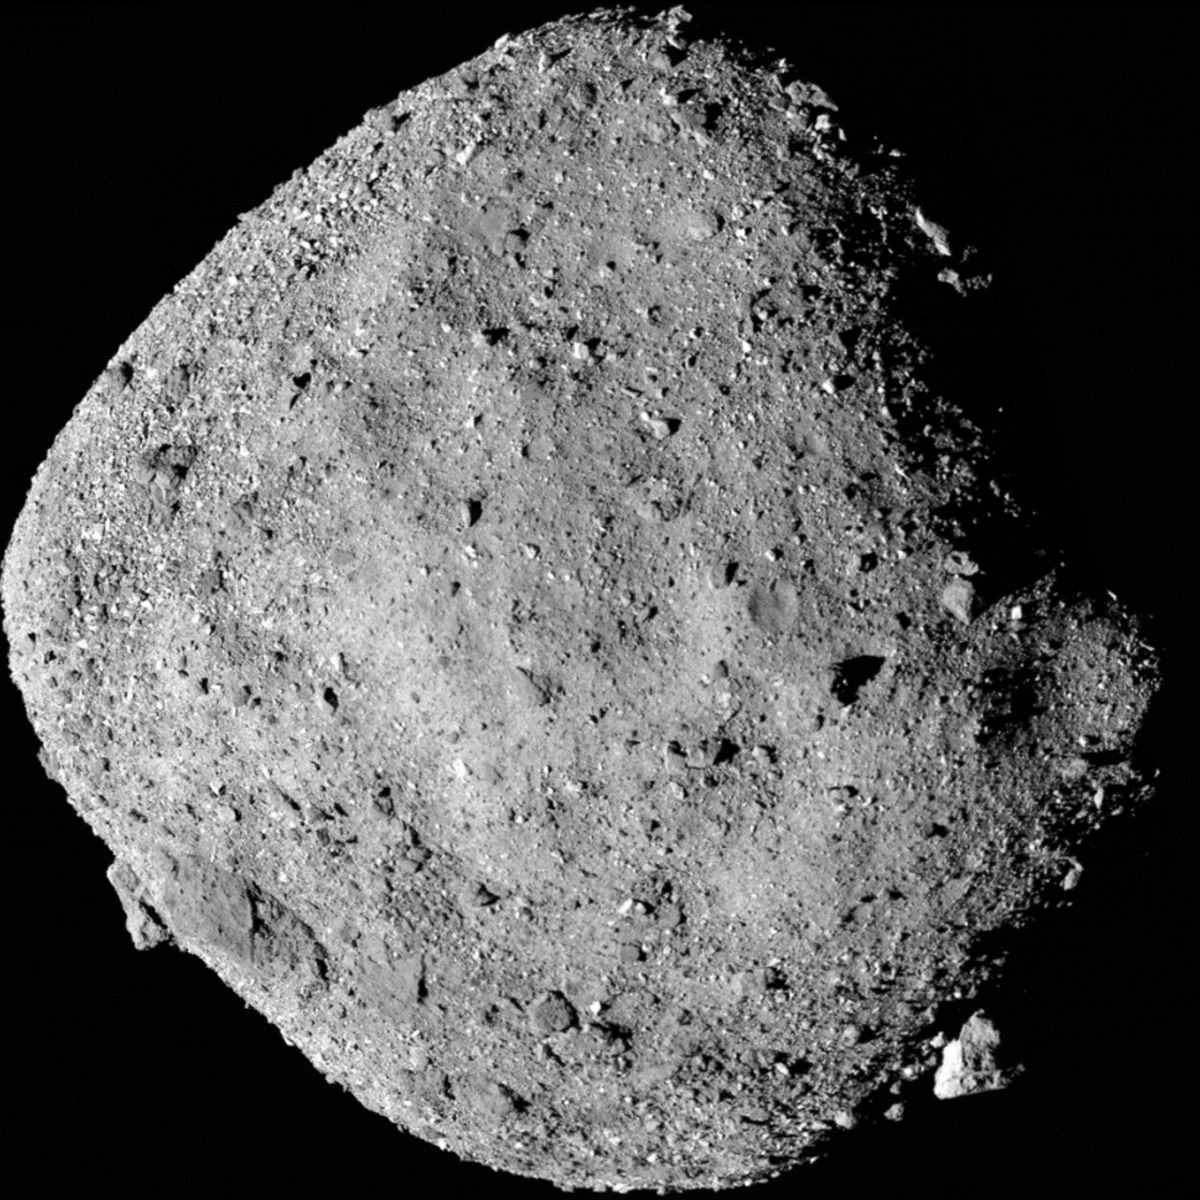 Снимок астероида Бенну, сделанный с расстояния 24 км. Считается самой детализированной фотографией поверхности астероида за всю историю науки. 